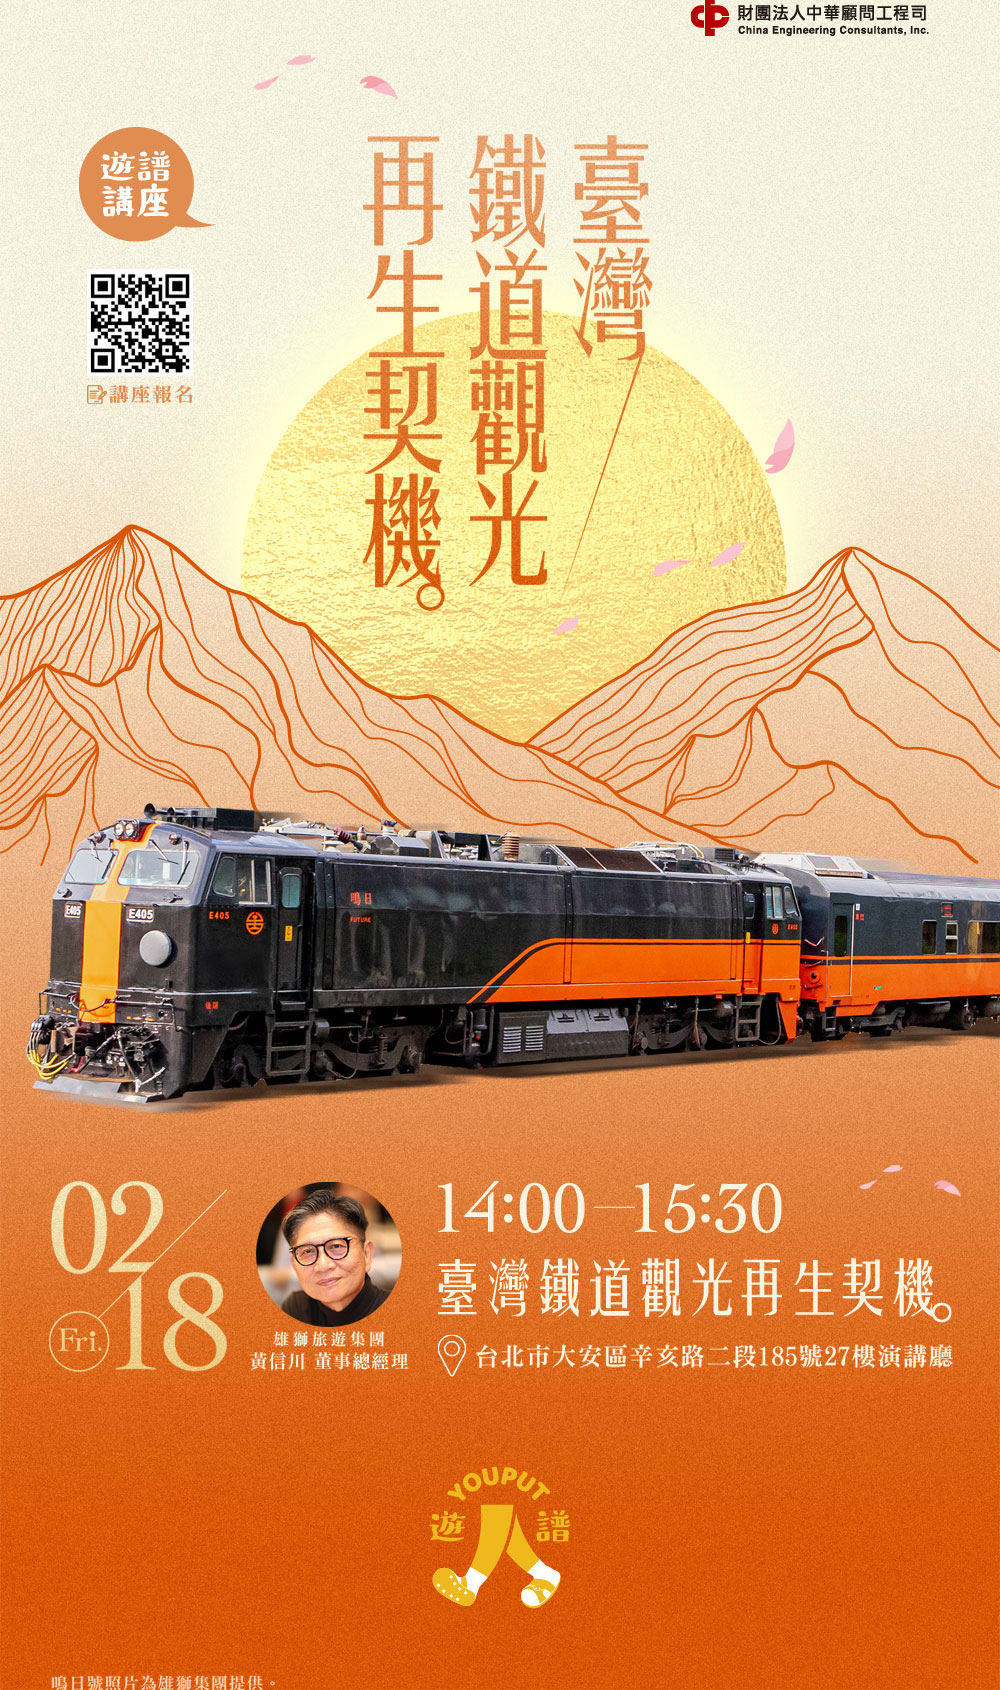 台灣鐵道觀光再生契機-黃信川
圖/遊譜